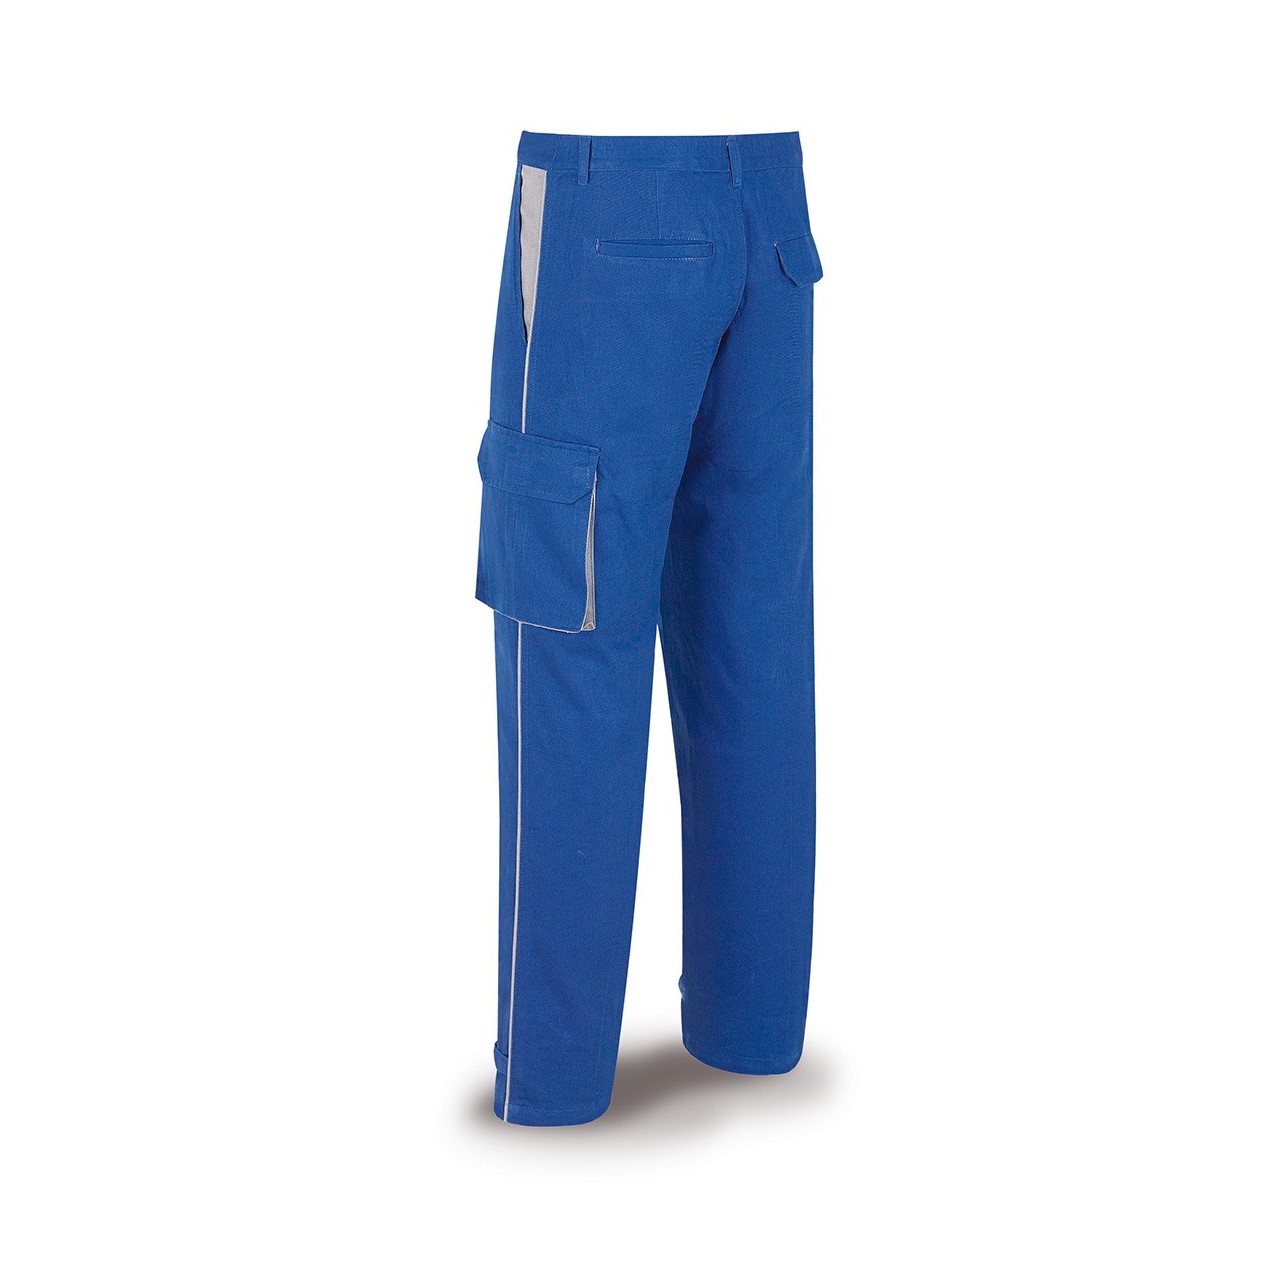 Pantalón Marca algodón azulina Sup Top 488